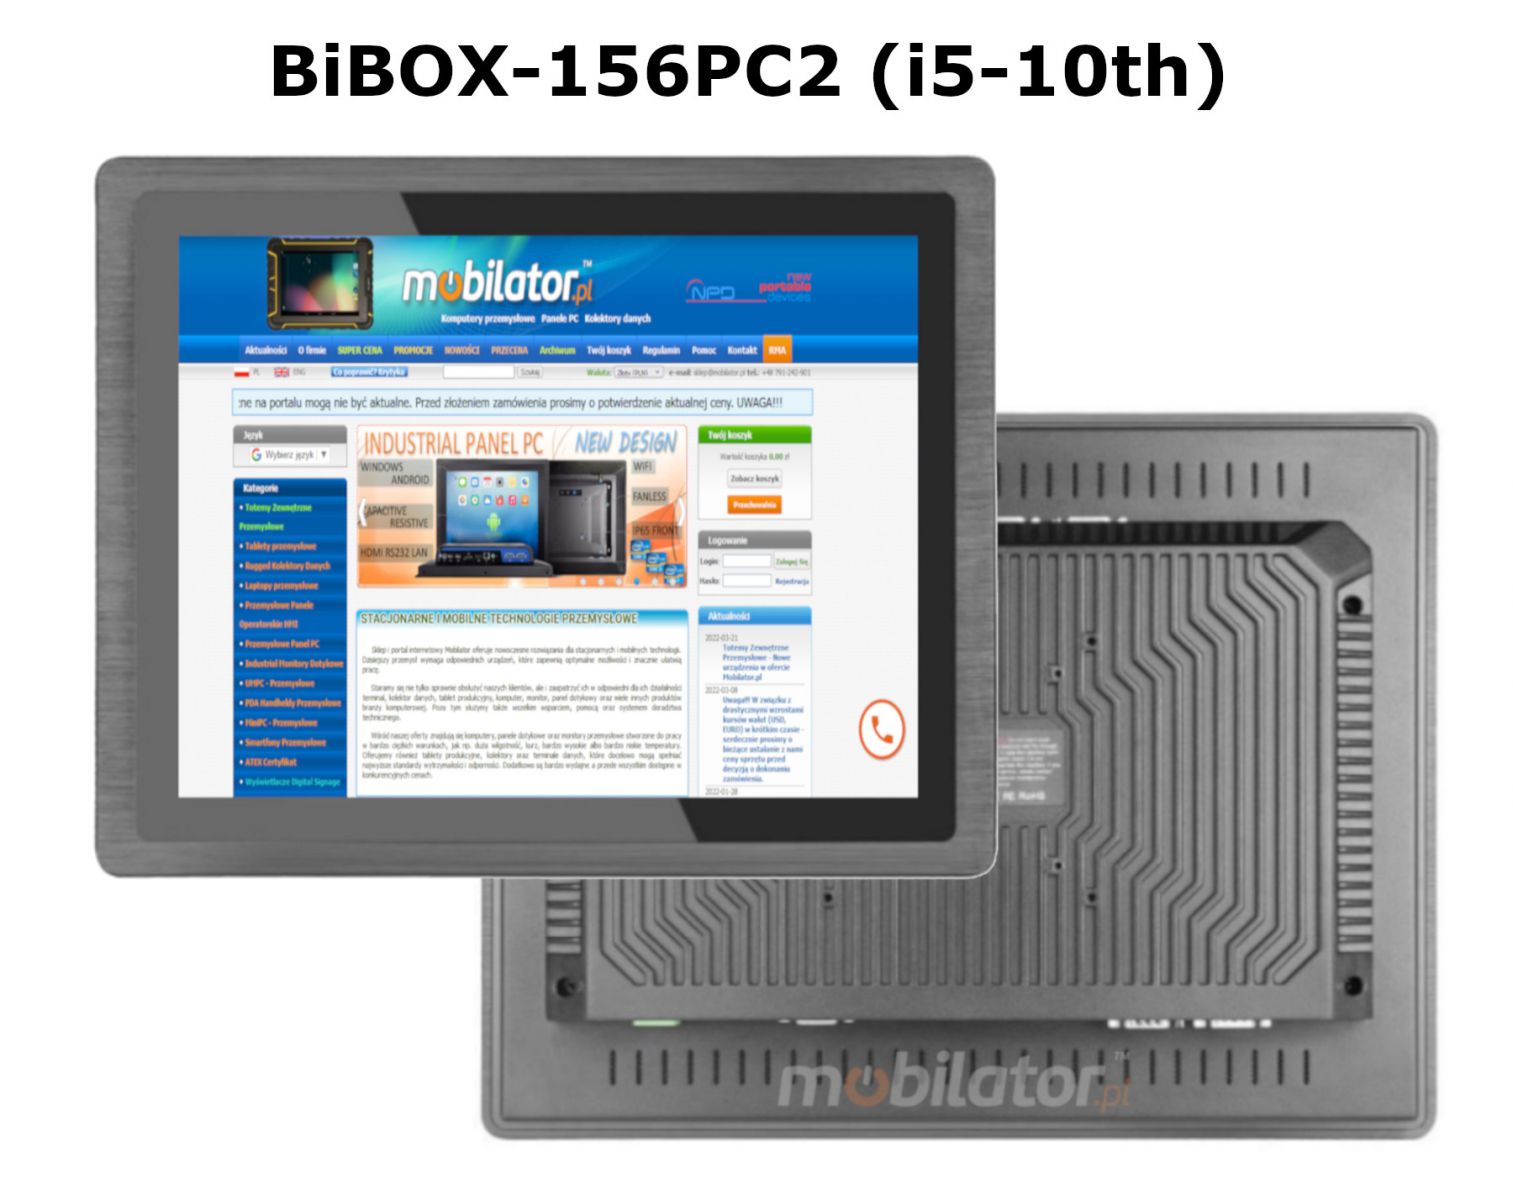 panel BIBOX-156PC2 wyposaony w czno 4G oraz pojemnym dyskiem RAM i SSD